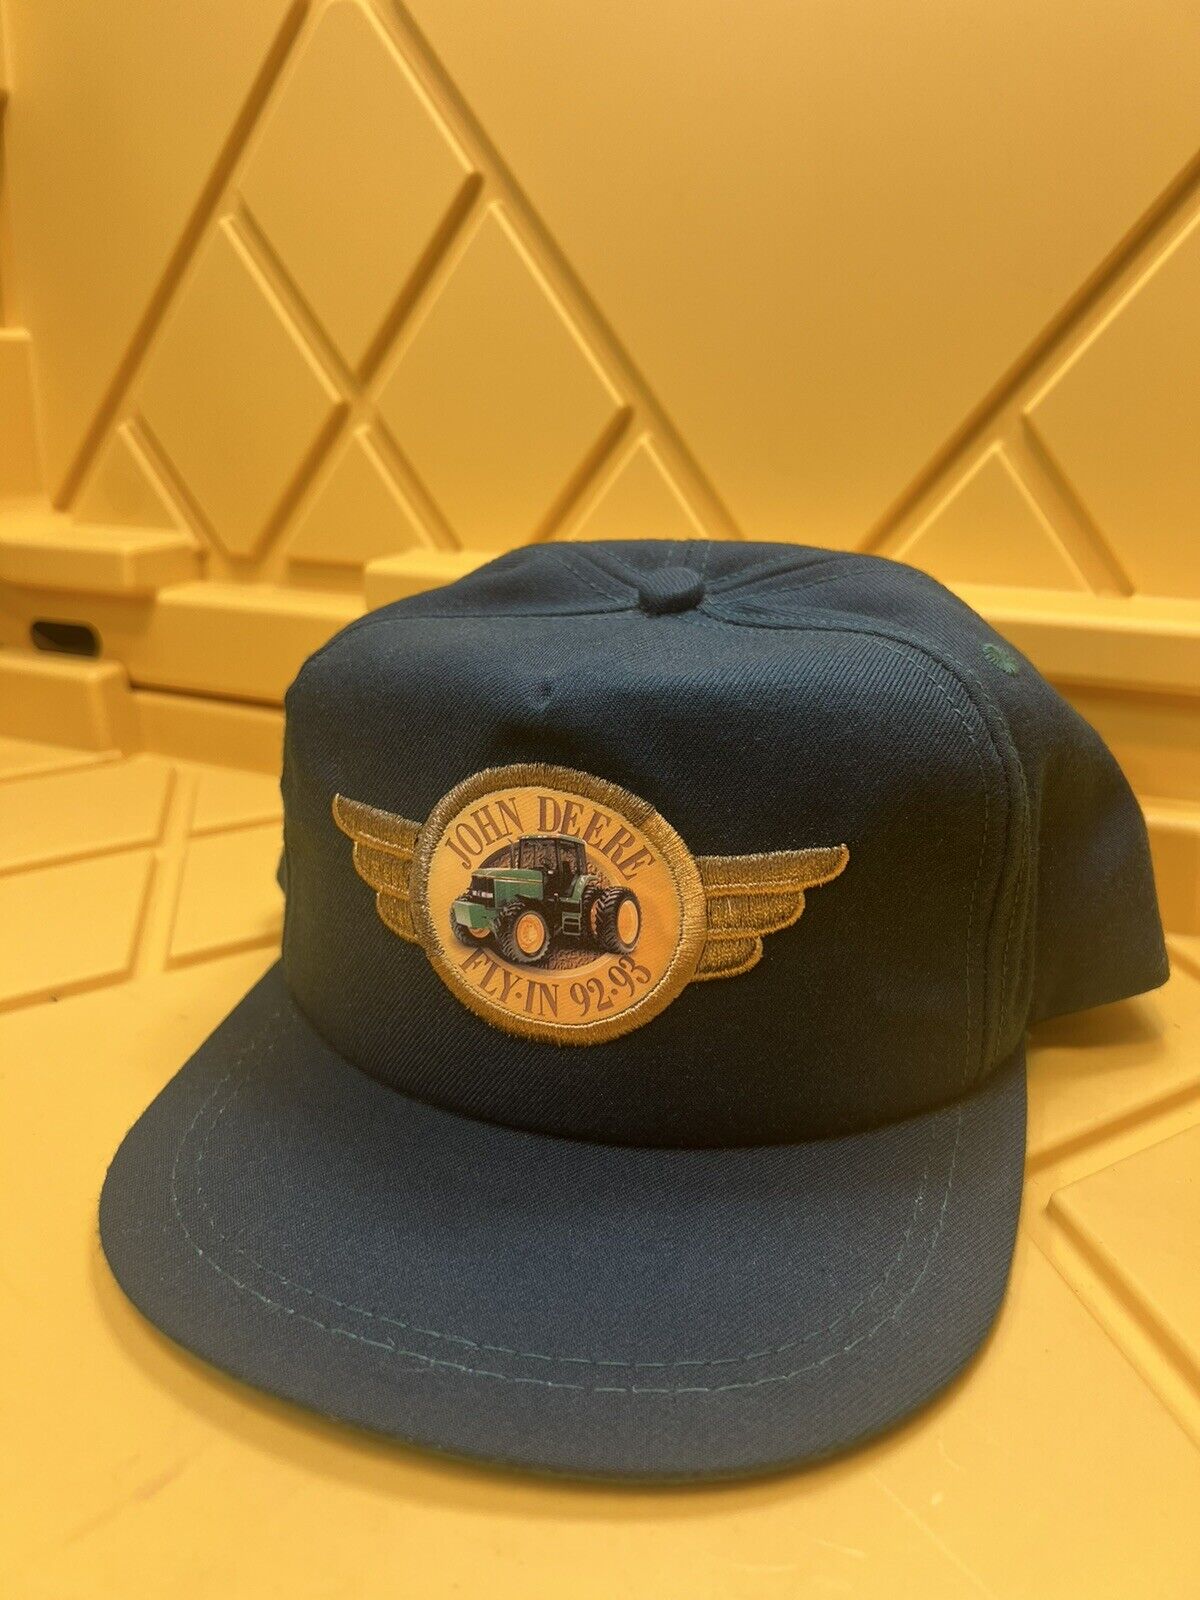 Vintage JOHN DEERE FLY-IN 92-93 Farmer Trucker Hat Cap K-PRODUCTS Leather Strap